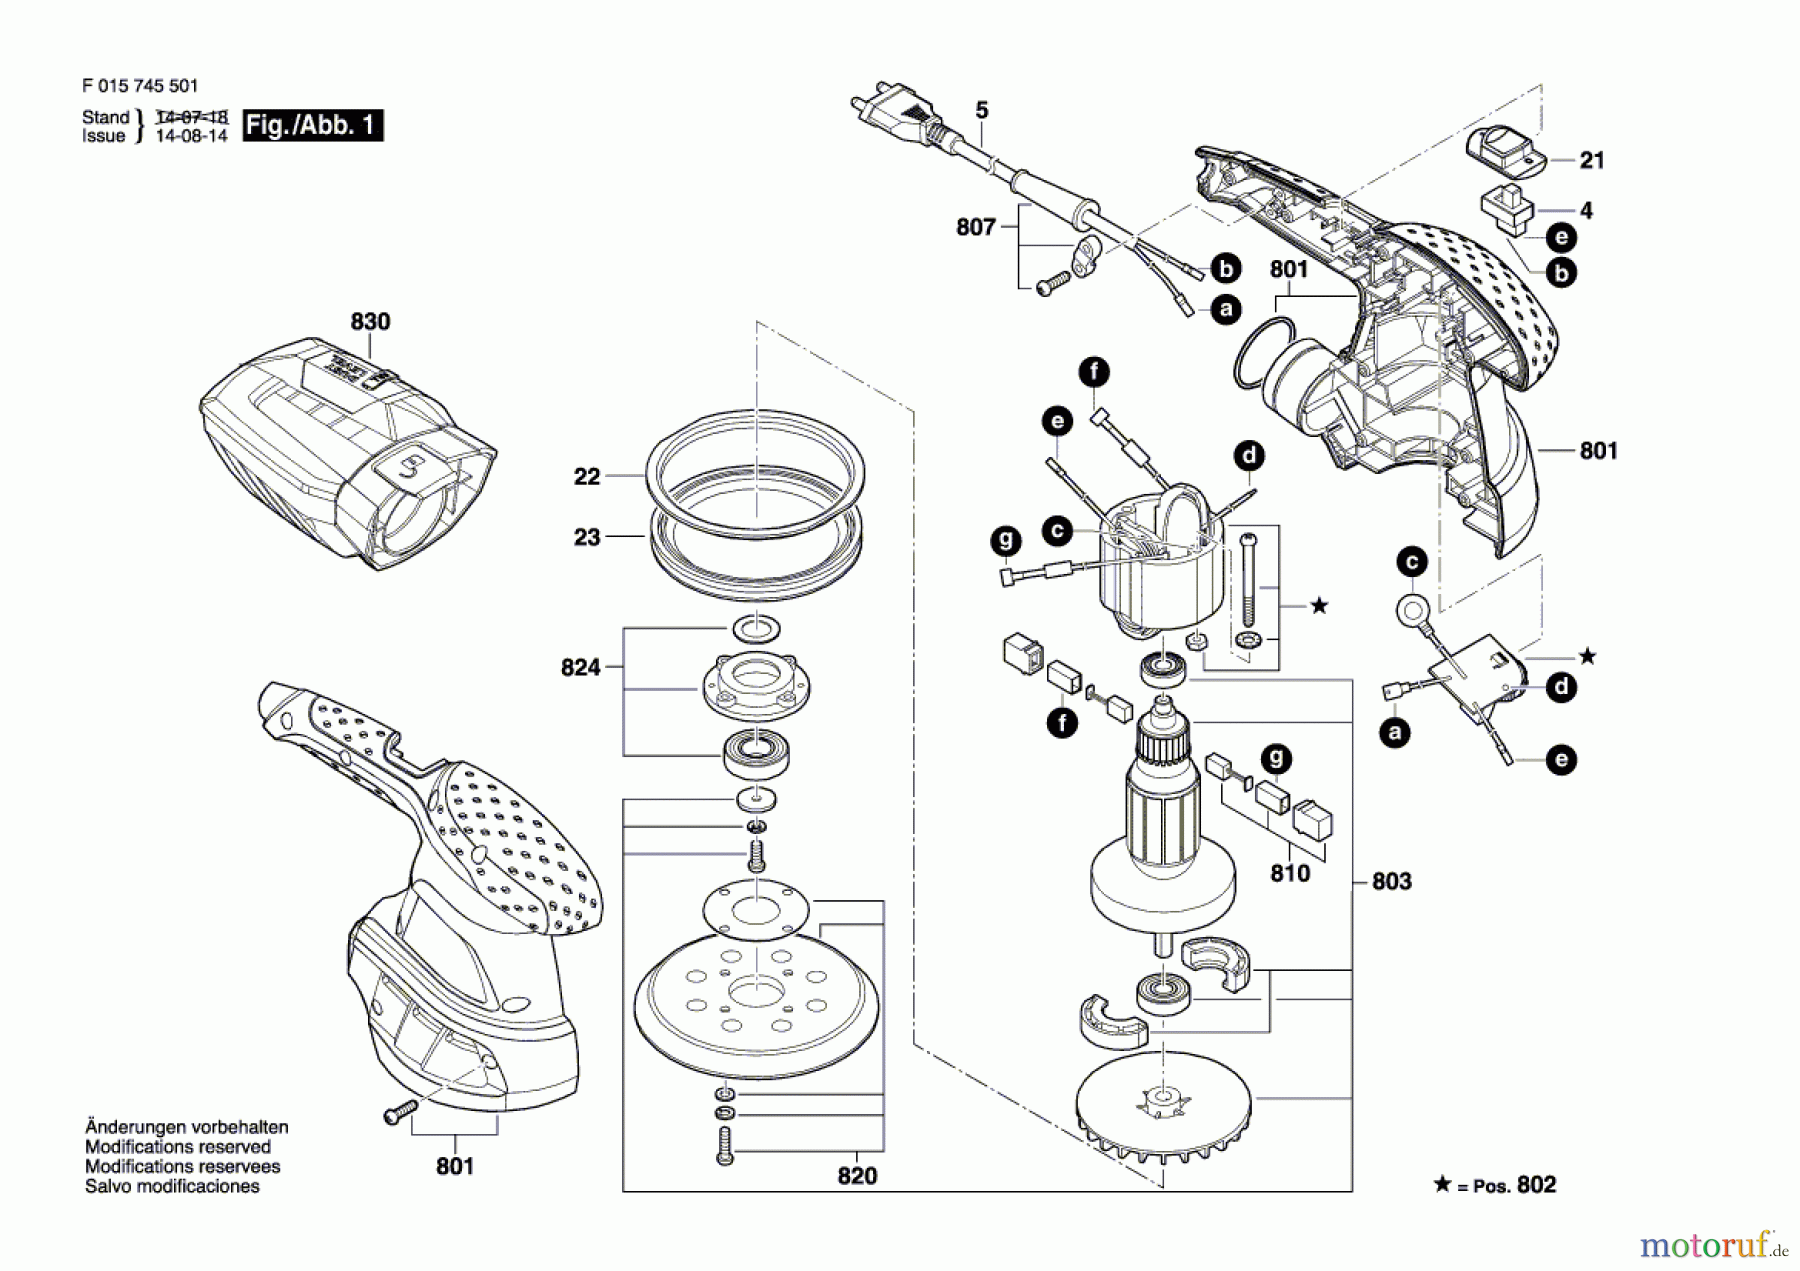  Bosch Werkzeug Exzenterschleifer 7455 Seite 1